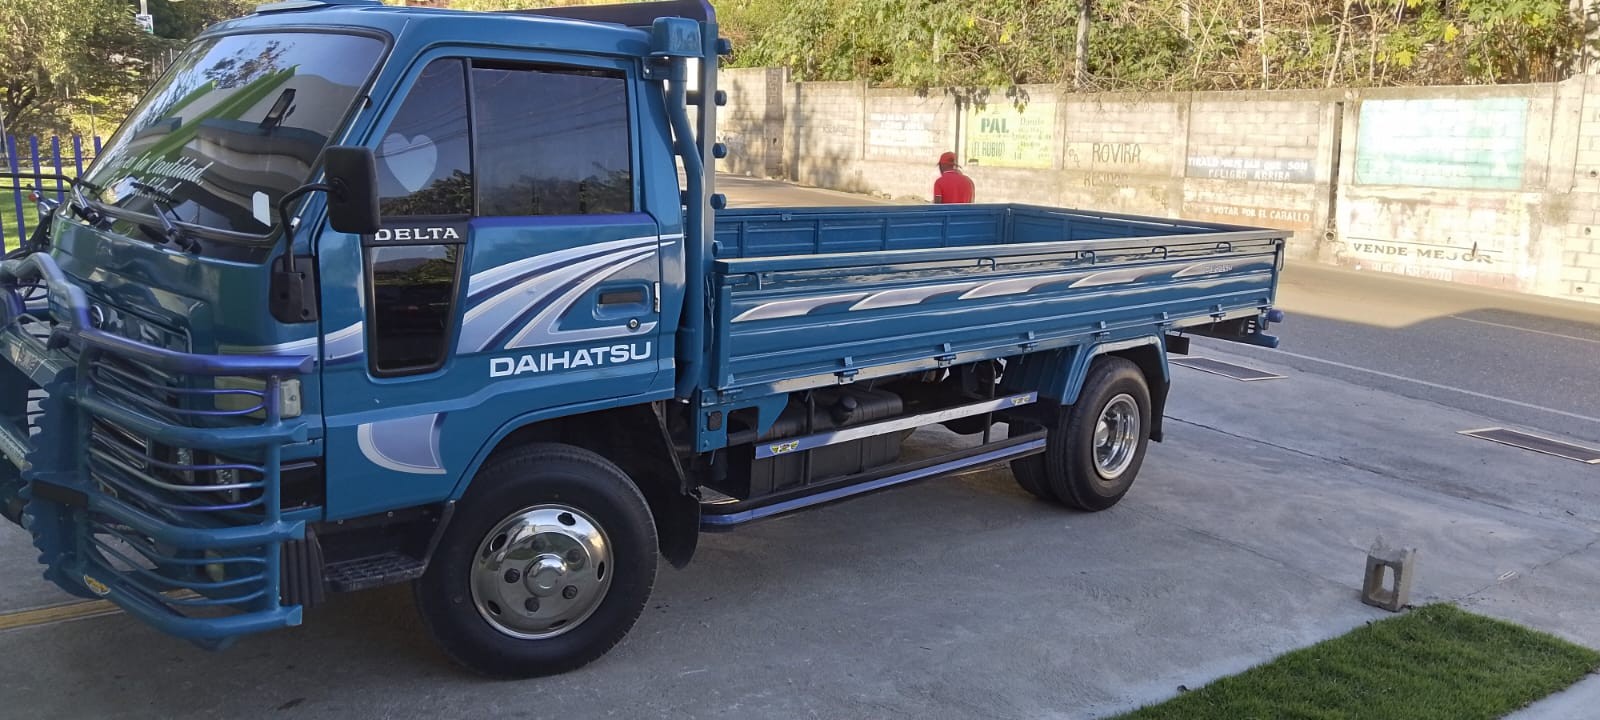 camiones y vehiculos pesados - Daihatsu Delta 2003 Cama Larga Cara Ancha 5